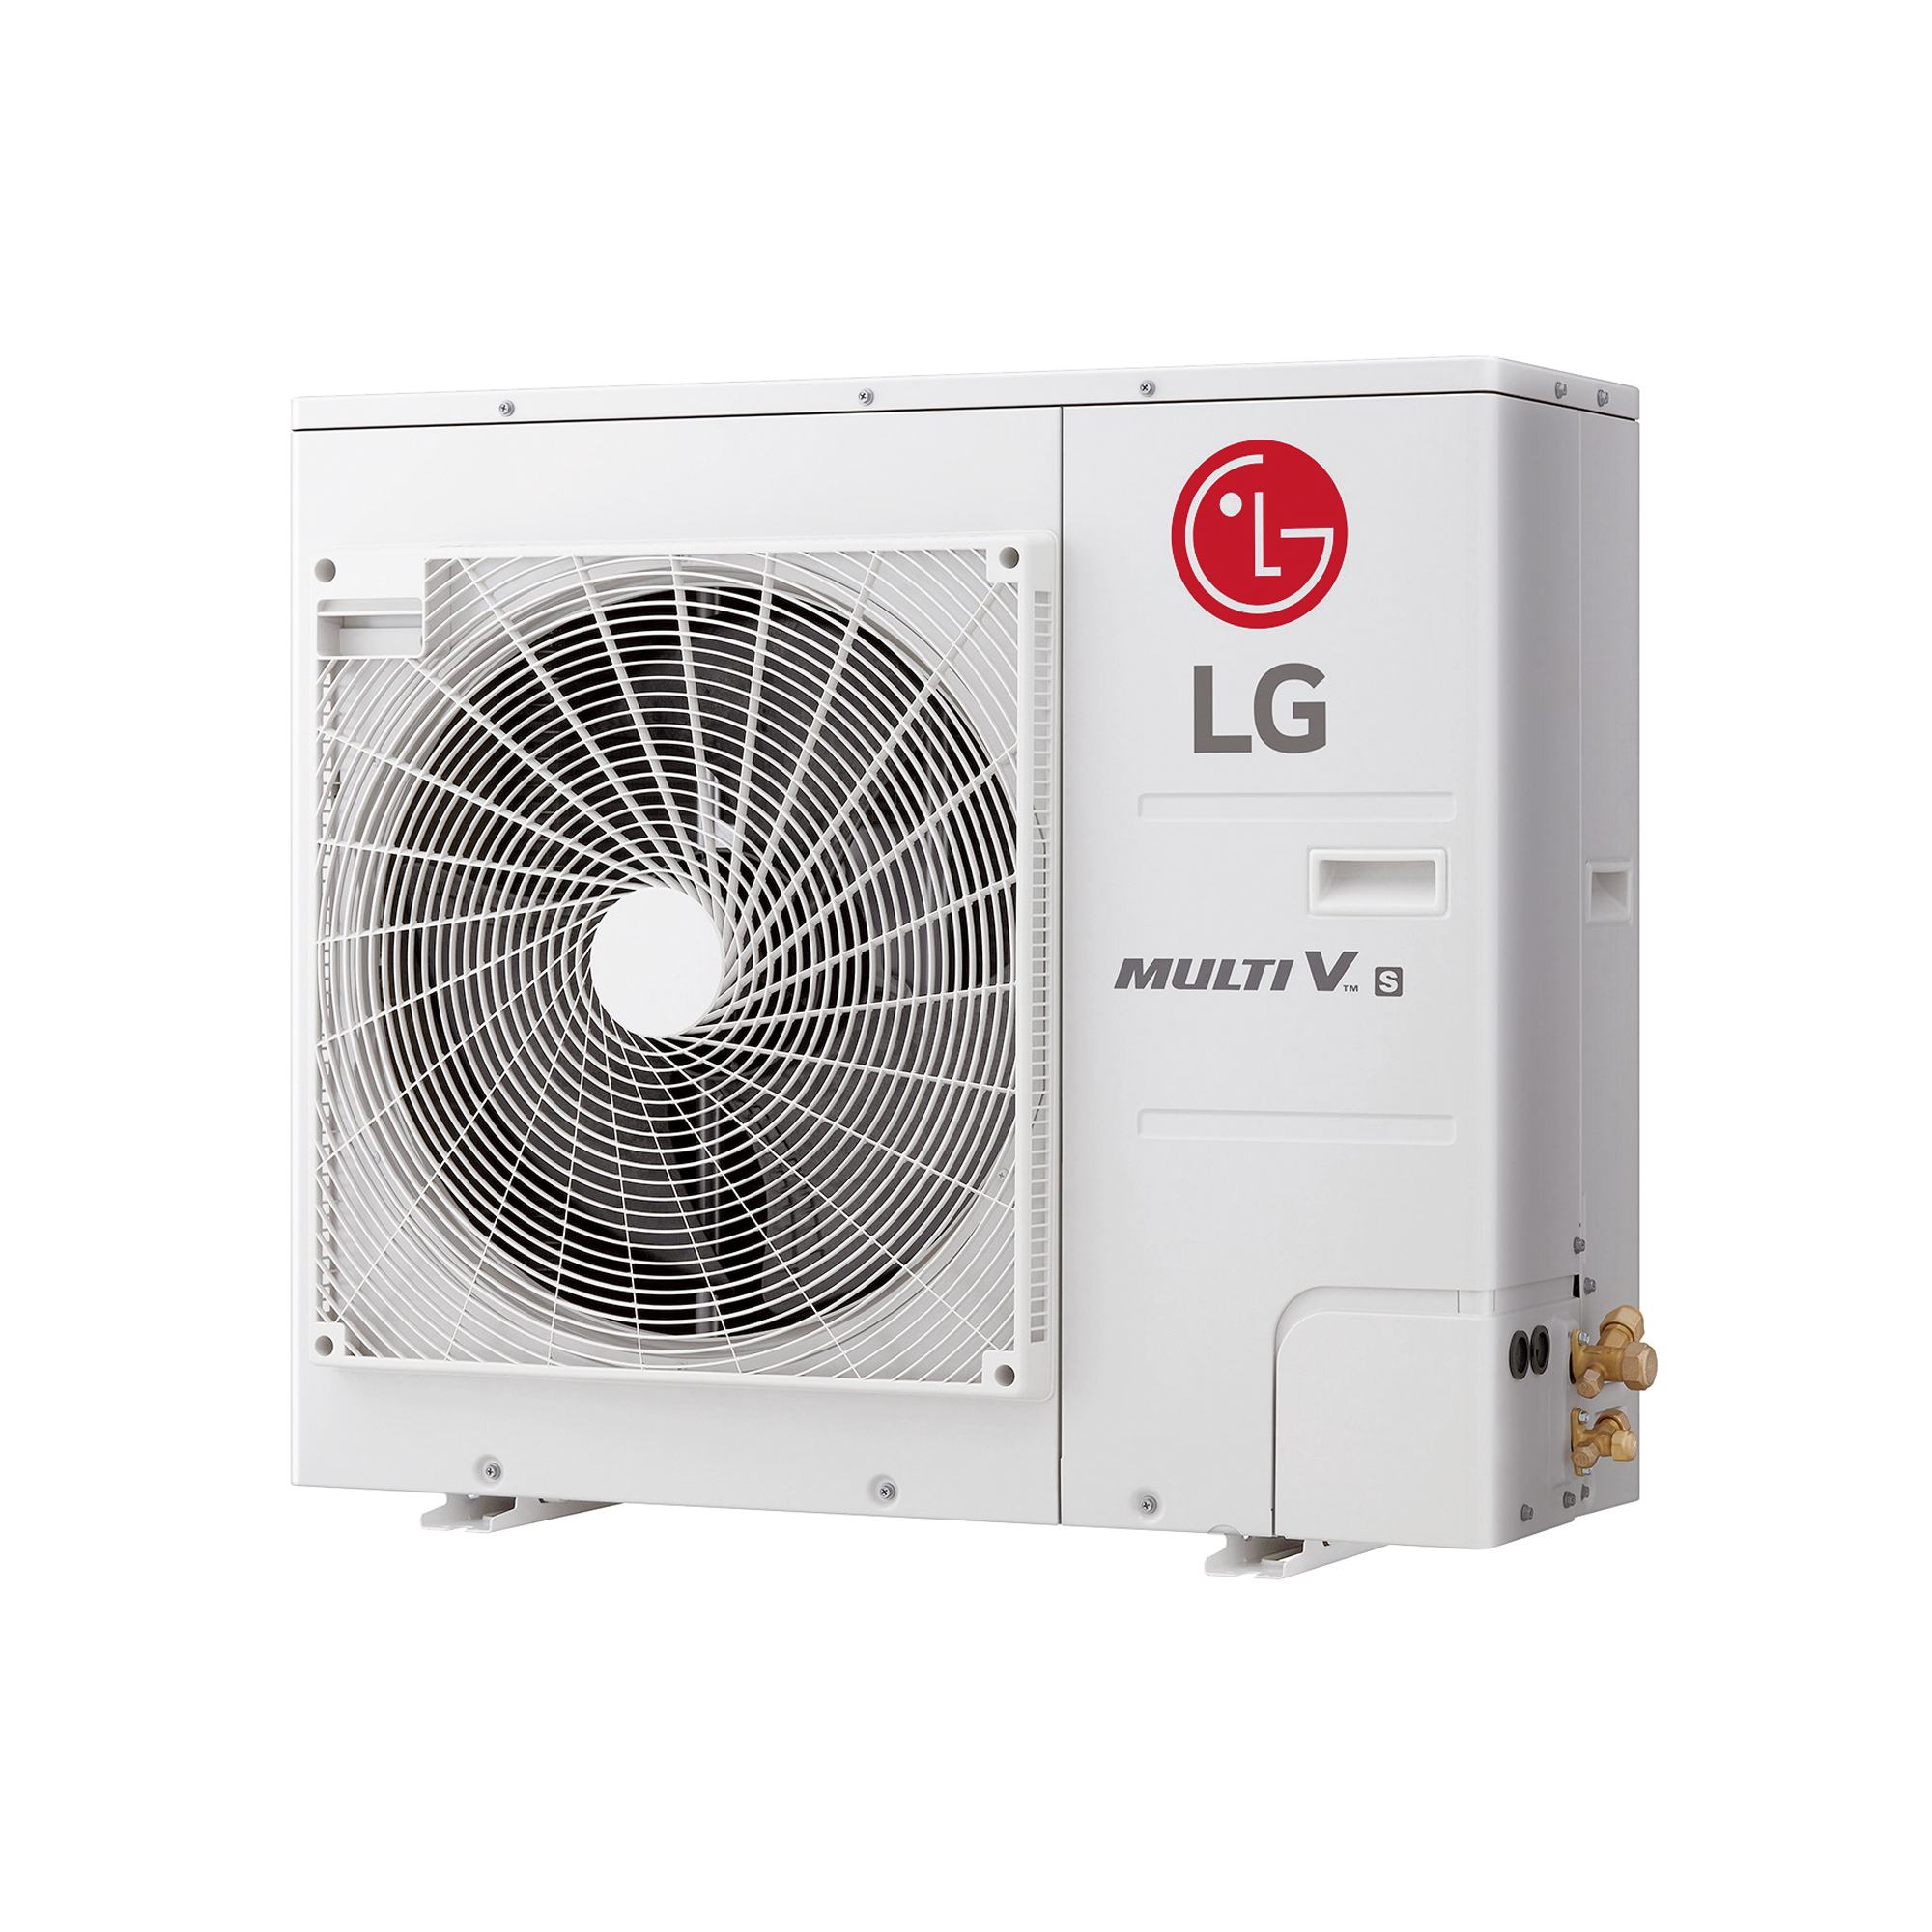 설치면적은 줄이고, BLDC인버터 압축기로 효율은 높인 <br/>LG Multi V S 상업